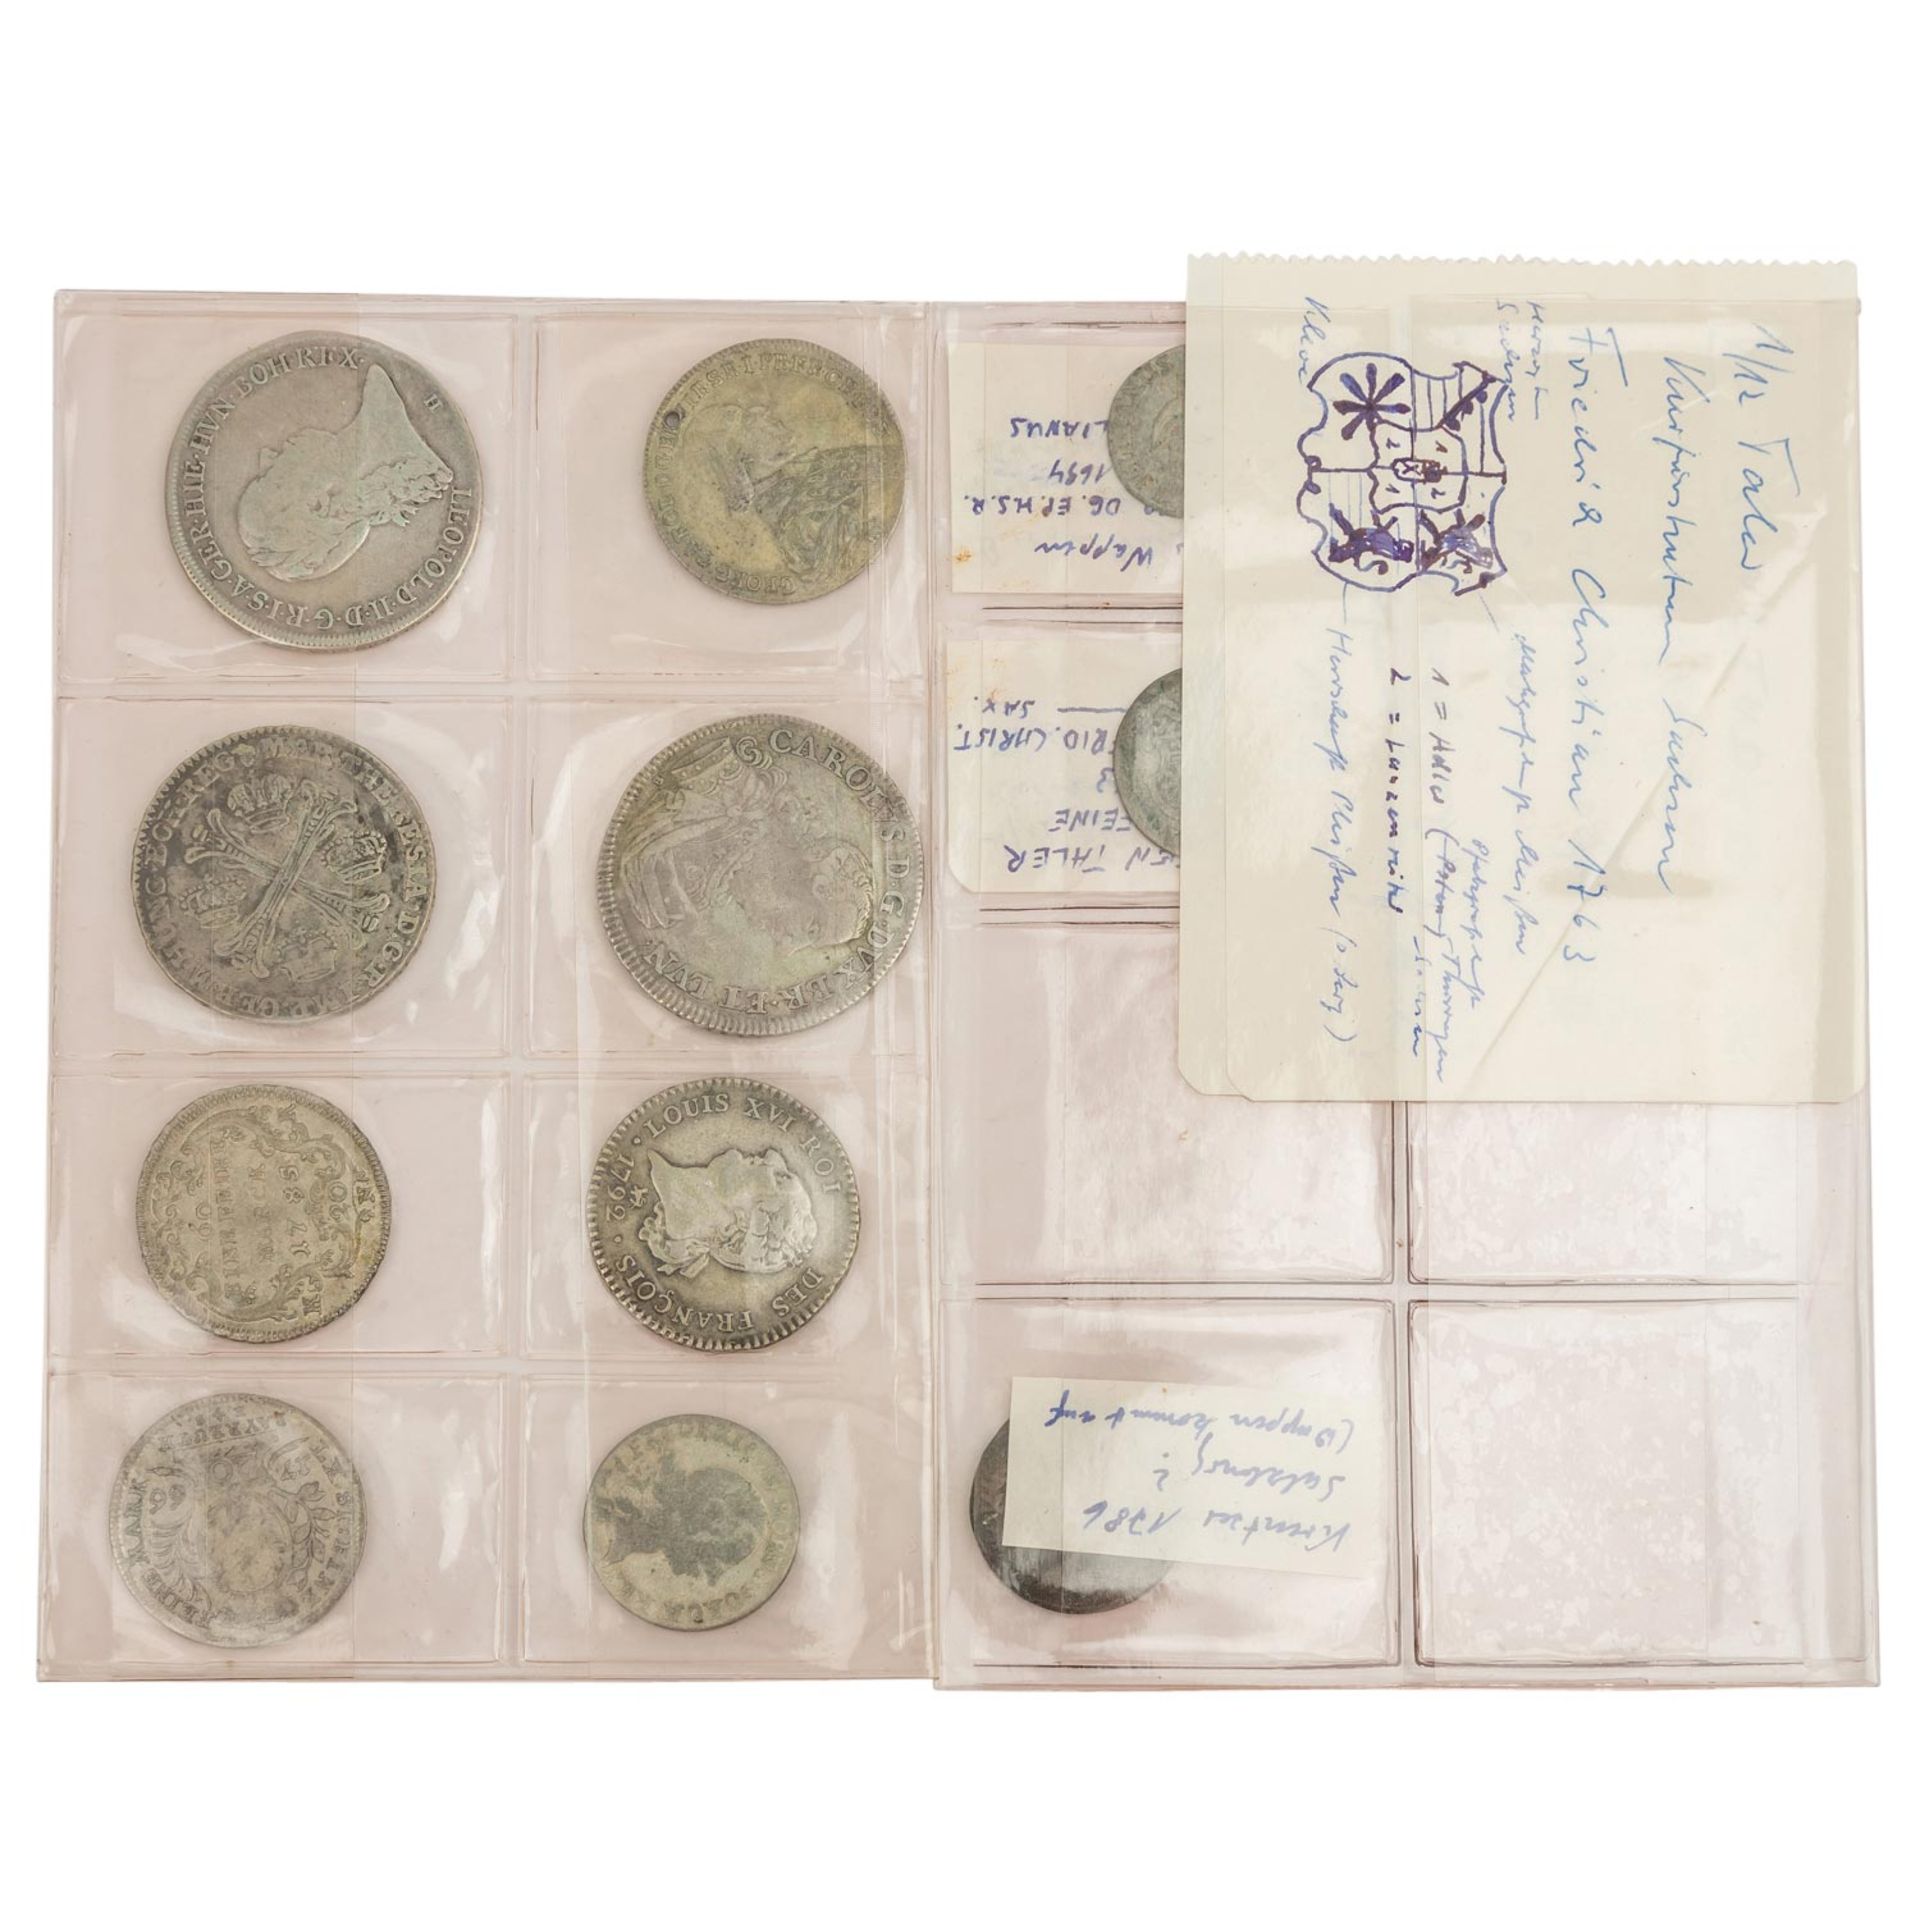 Kl. Konvolut Münzen des 18. Jh. mit ca. 11 Münzen - Bild 2 aus 2